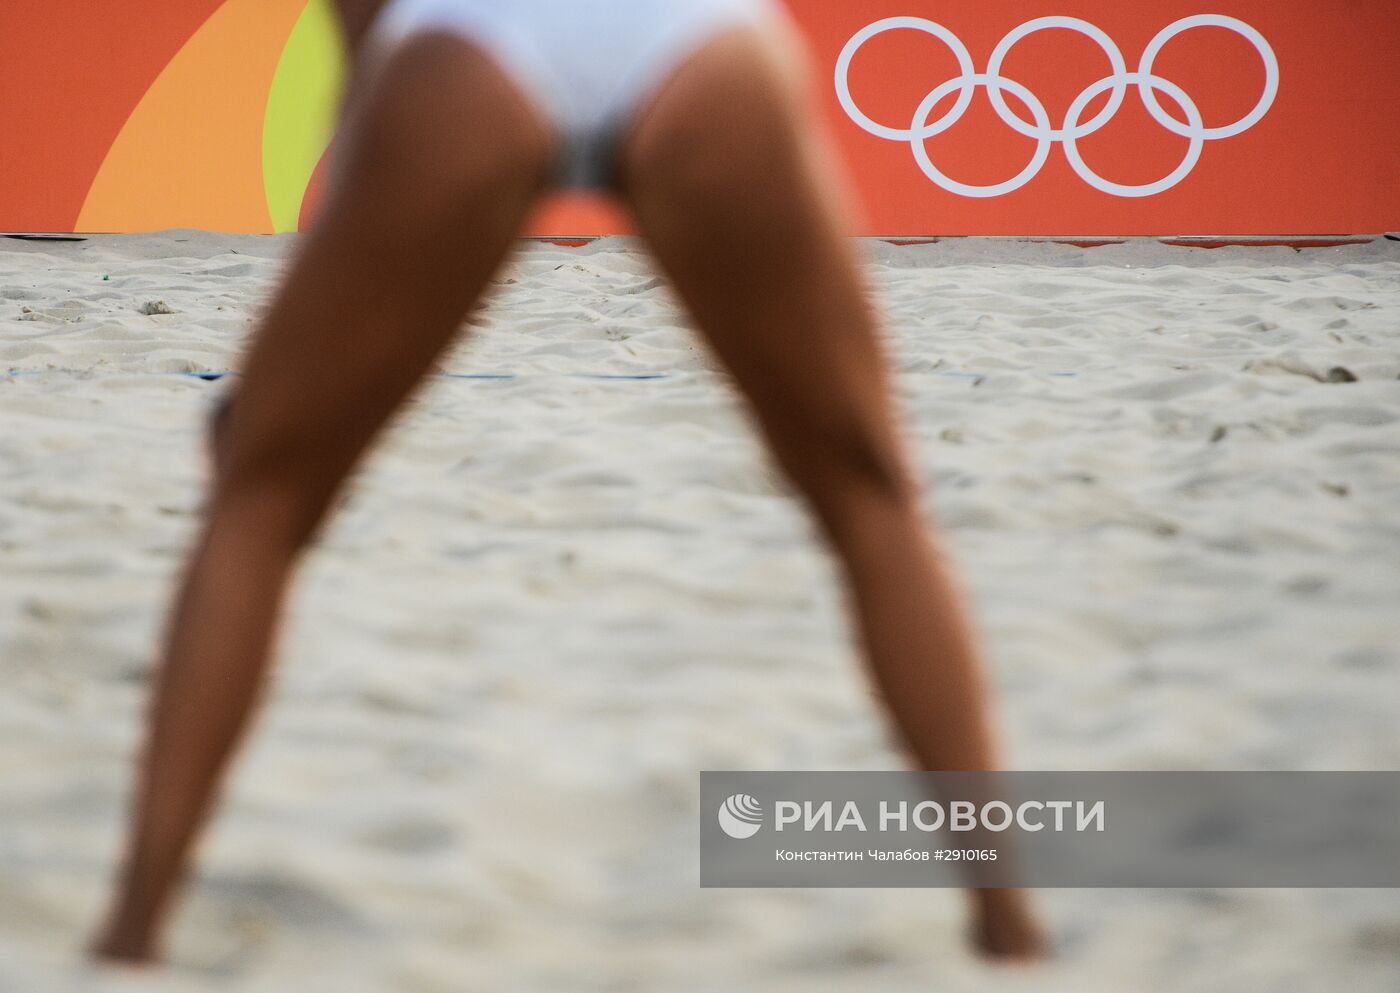 Олимпиада 2016. Пляжный волейбол. Шестой день